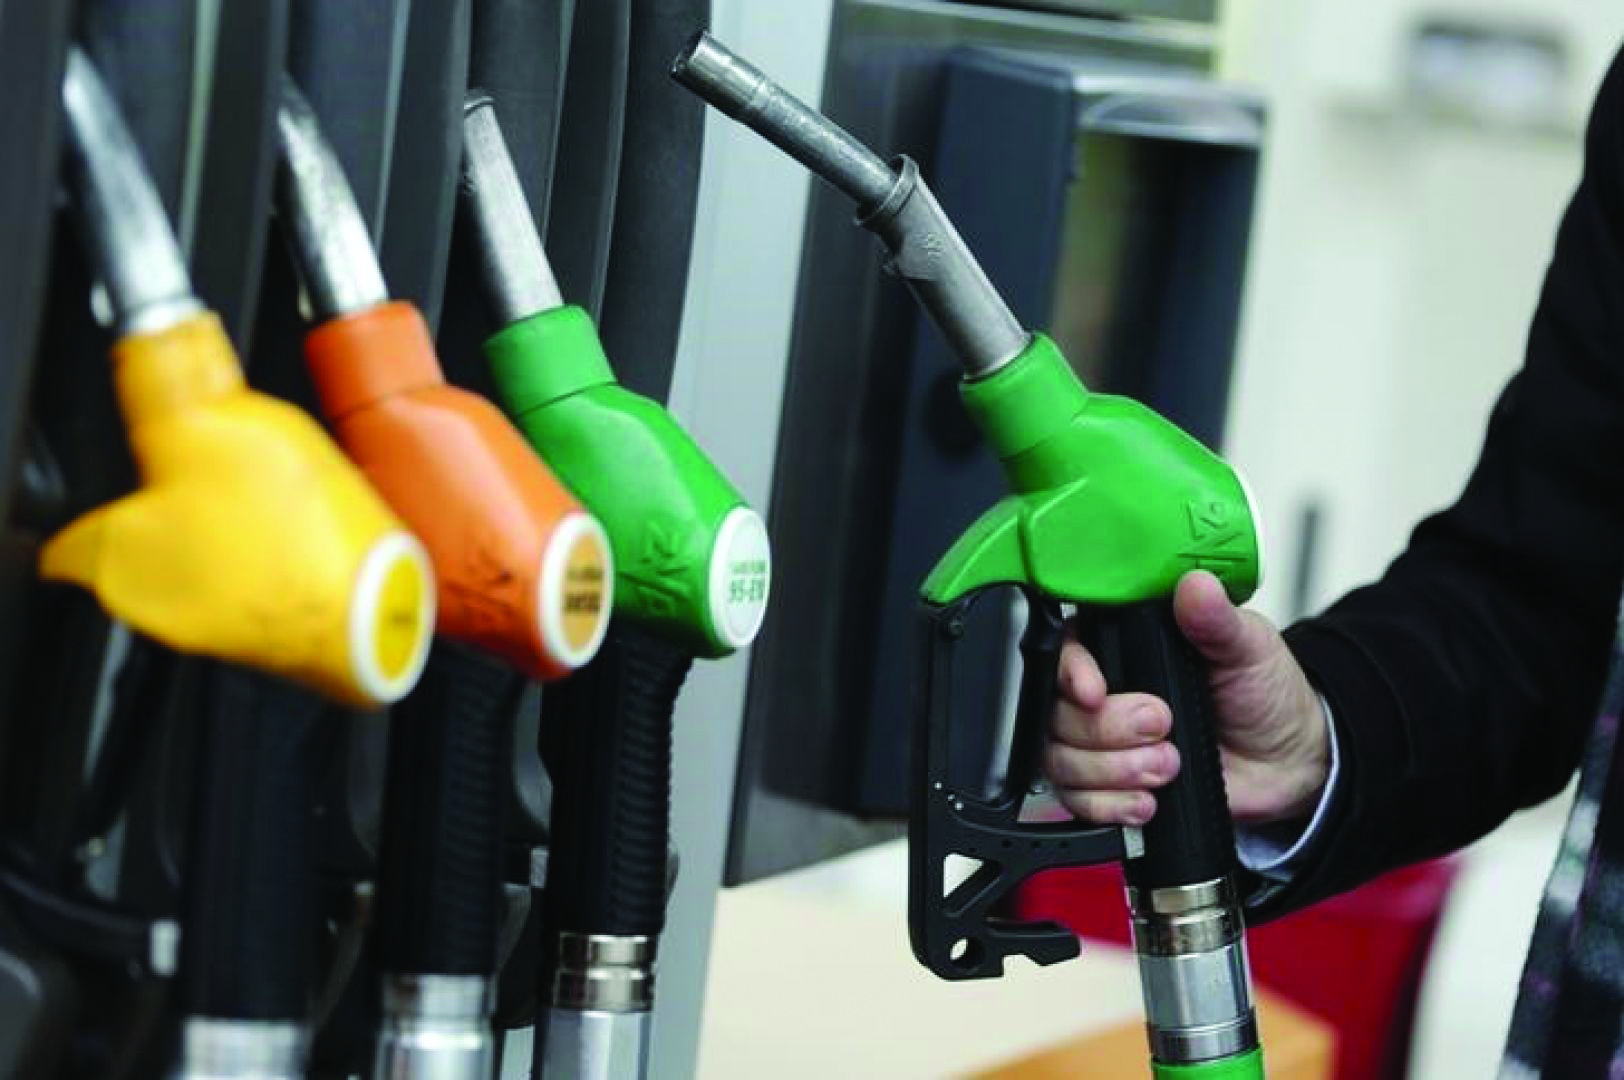 BORDI RRIT SËRISH ÇMIMIN E NAFTËS/ Sa do të shiten benzina dhe gazi?